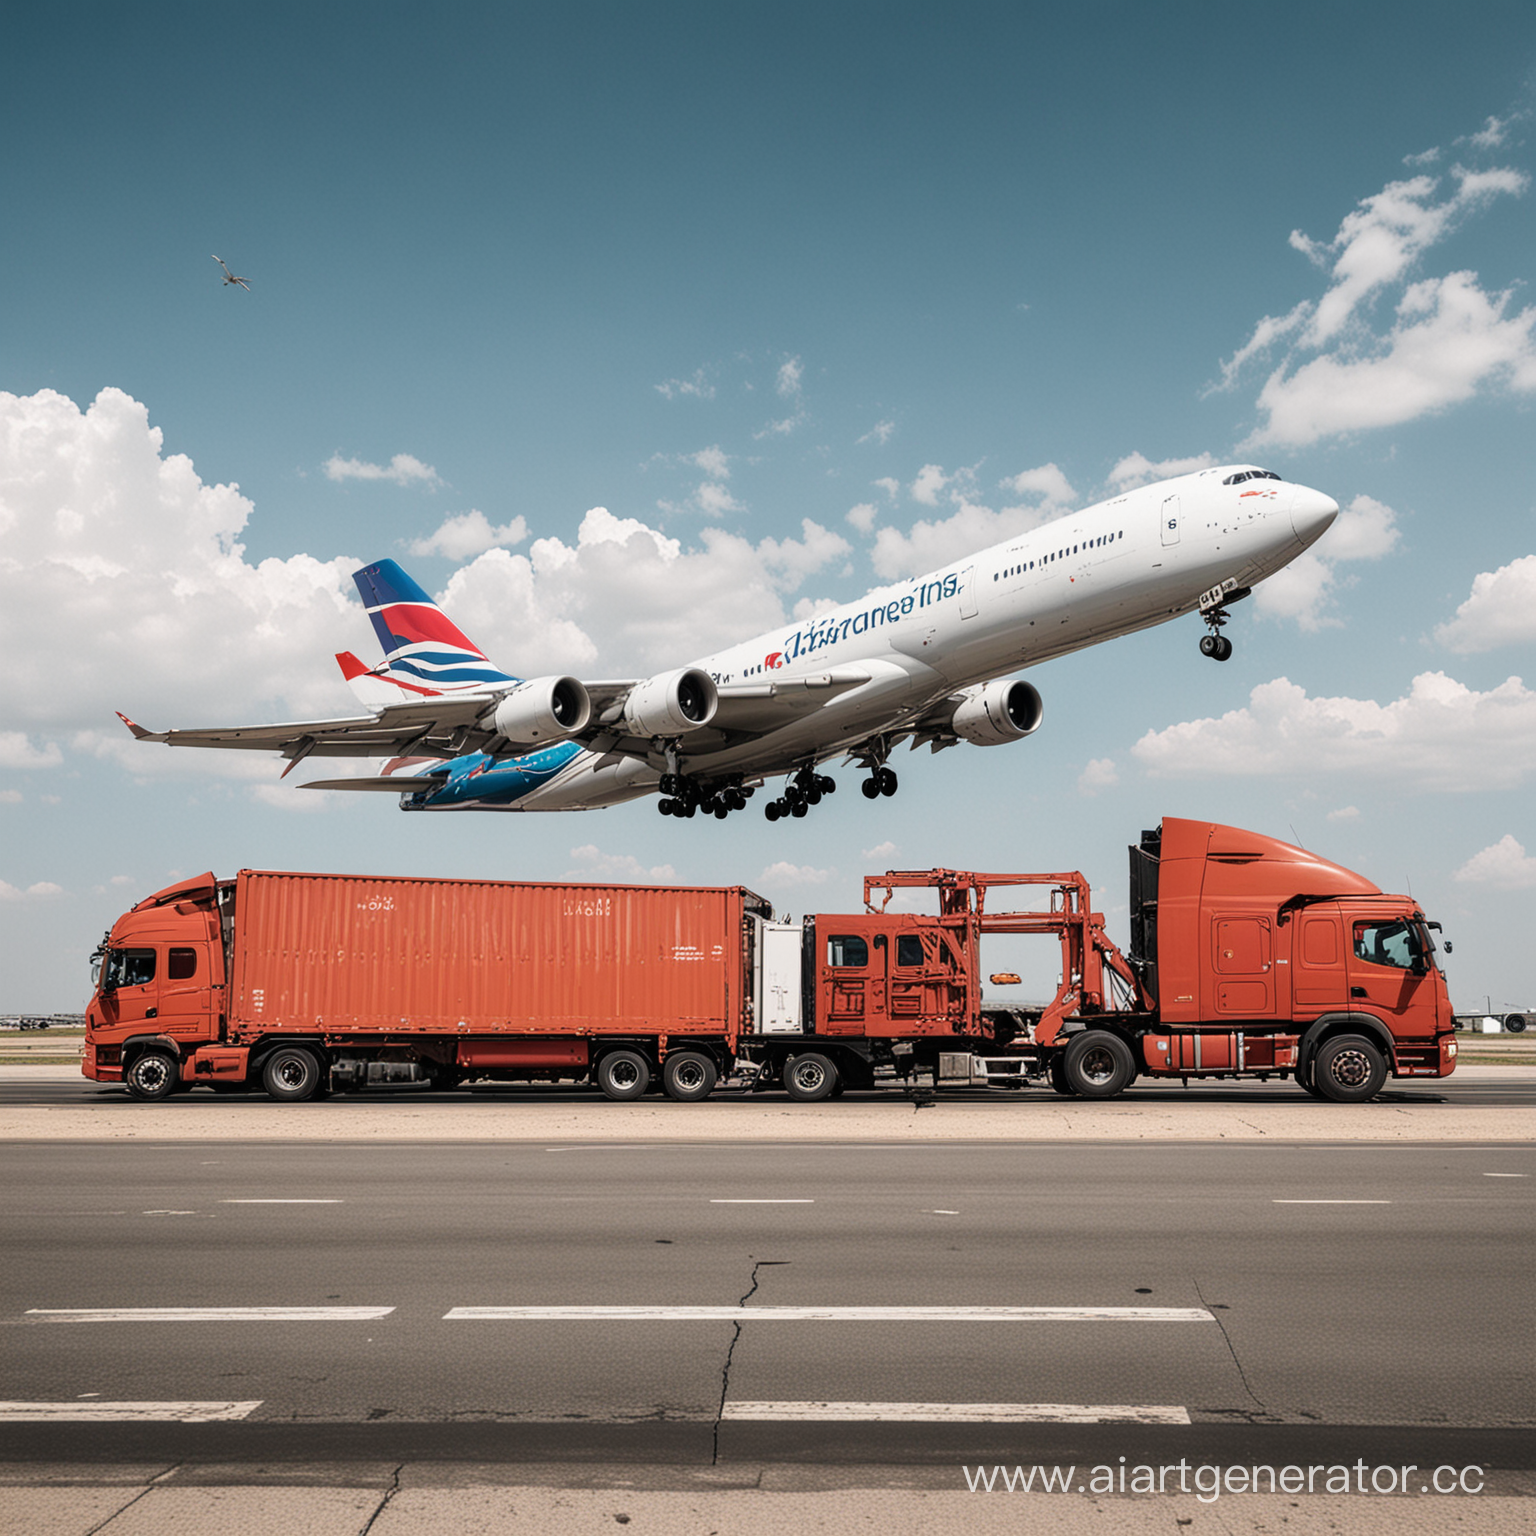 Перевозка самолетов на грузовом автомобиле